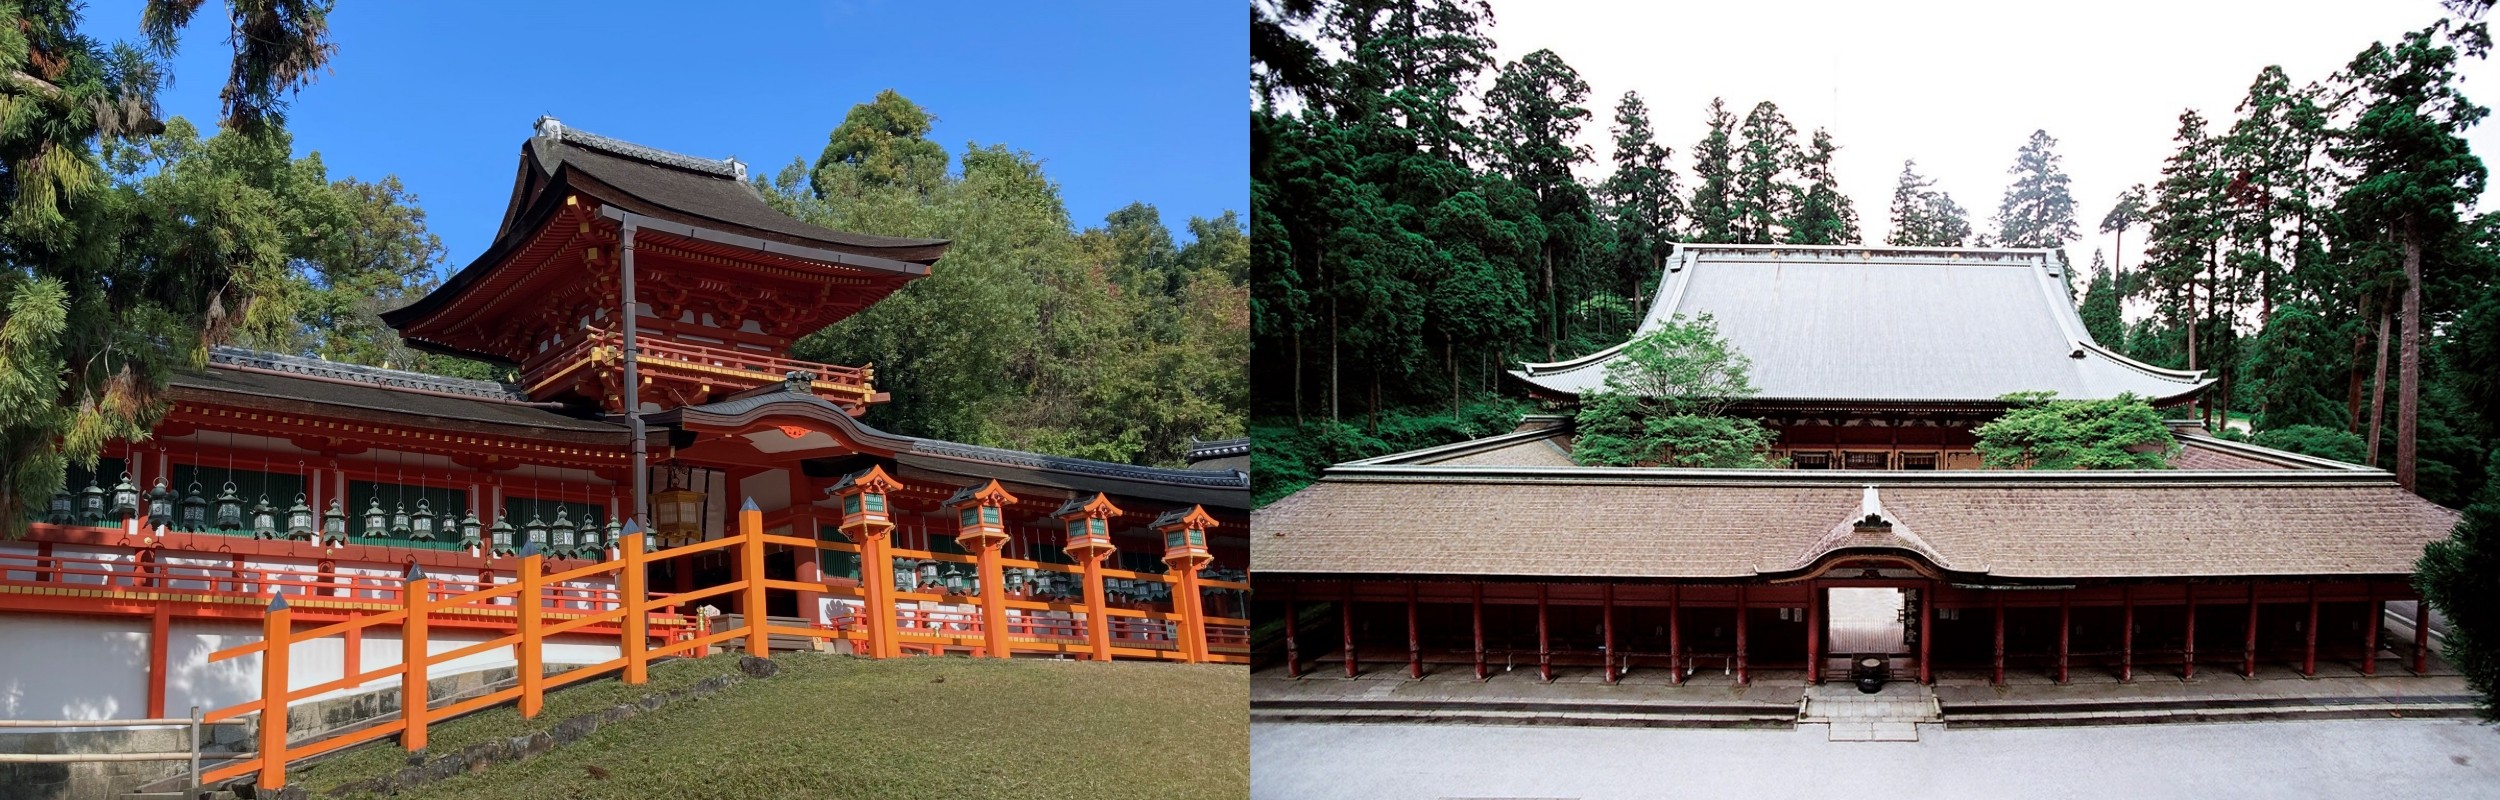 Cổng trung tâm và hành lang của Đại đạo Kasuga ở Nara, Đền Enryakuji ở Shiga